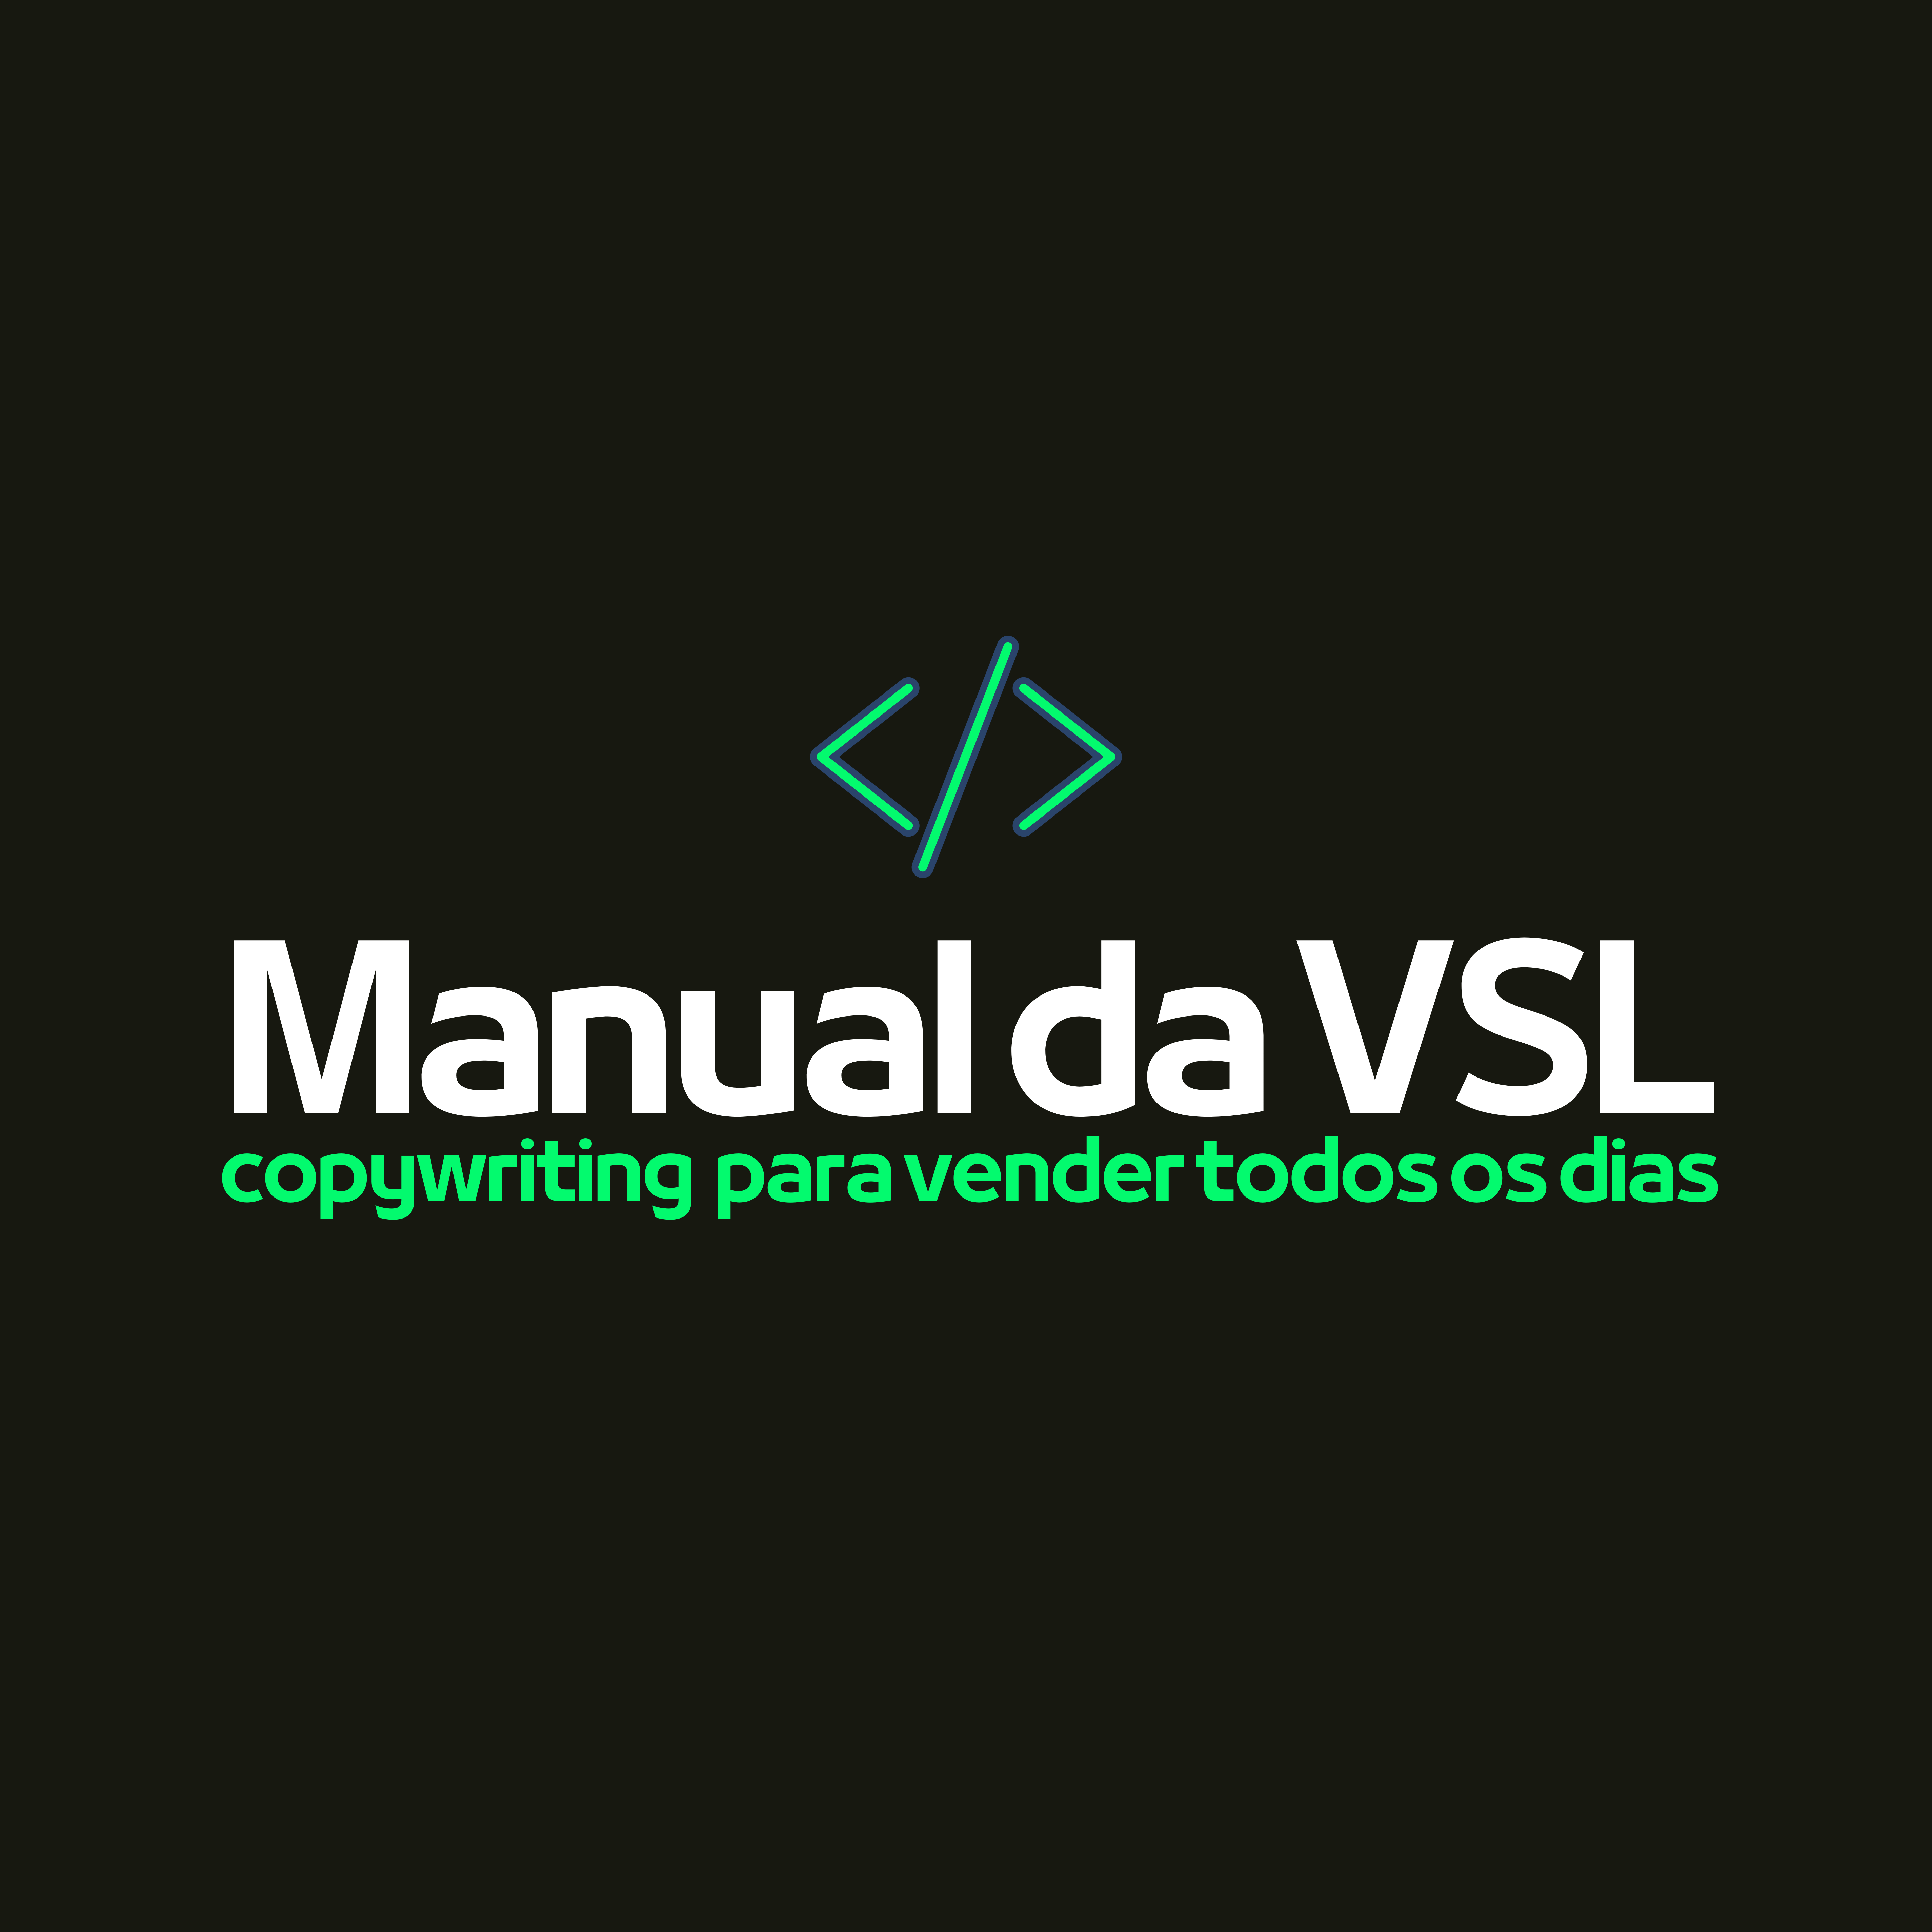 Manual da VSL (Vídeo Sales Letter) - Ebook Completo 44